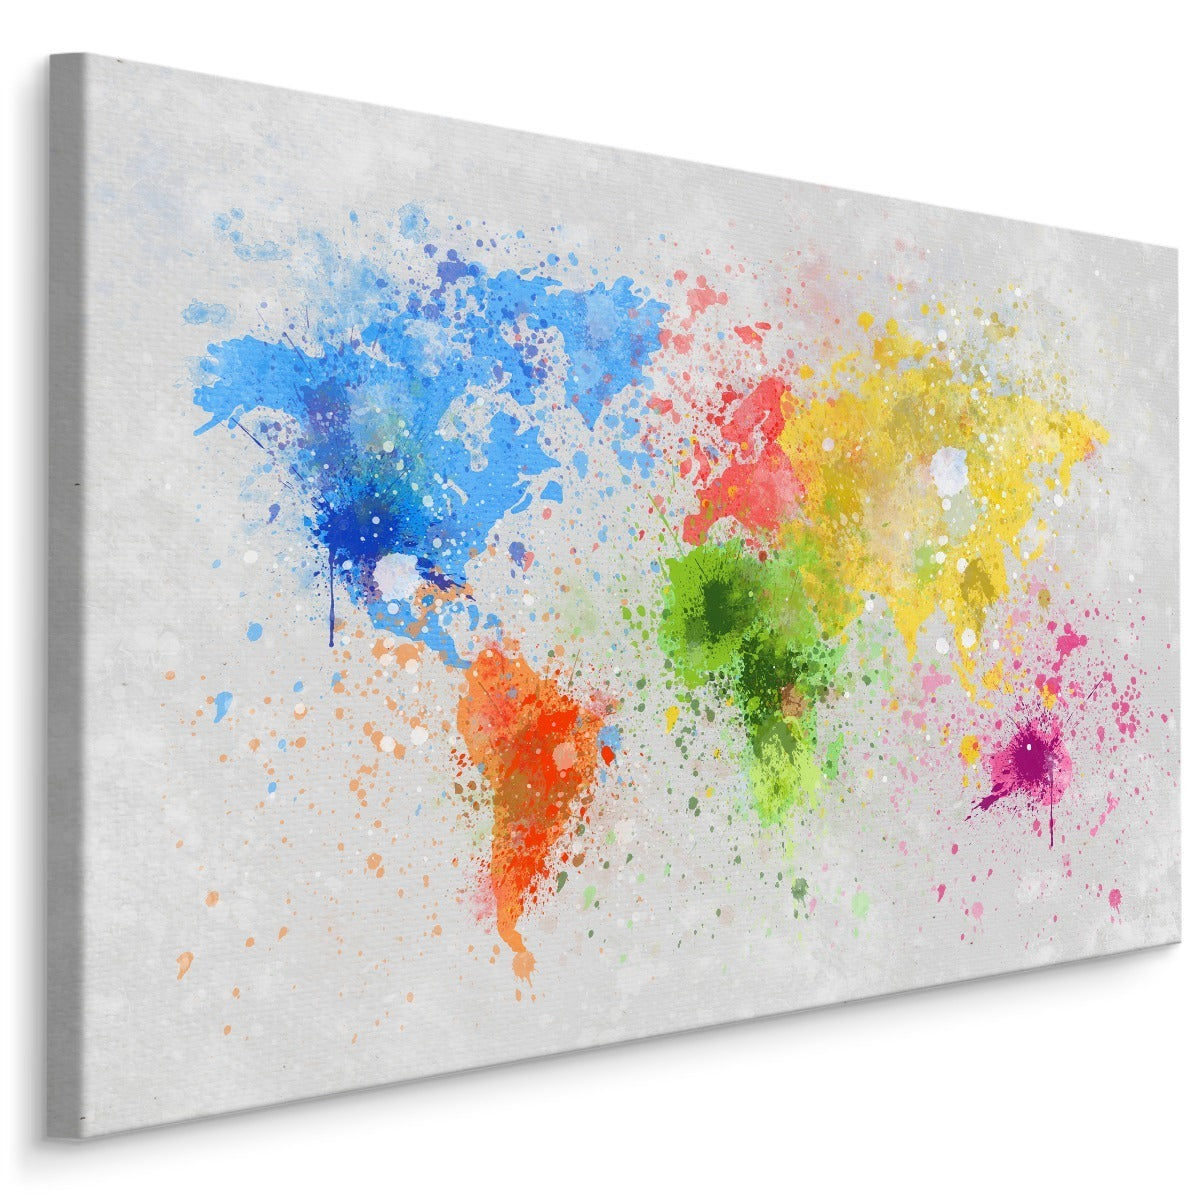 Fargerikt verdenskart malt i akvarell